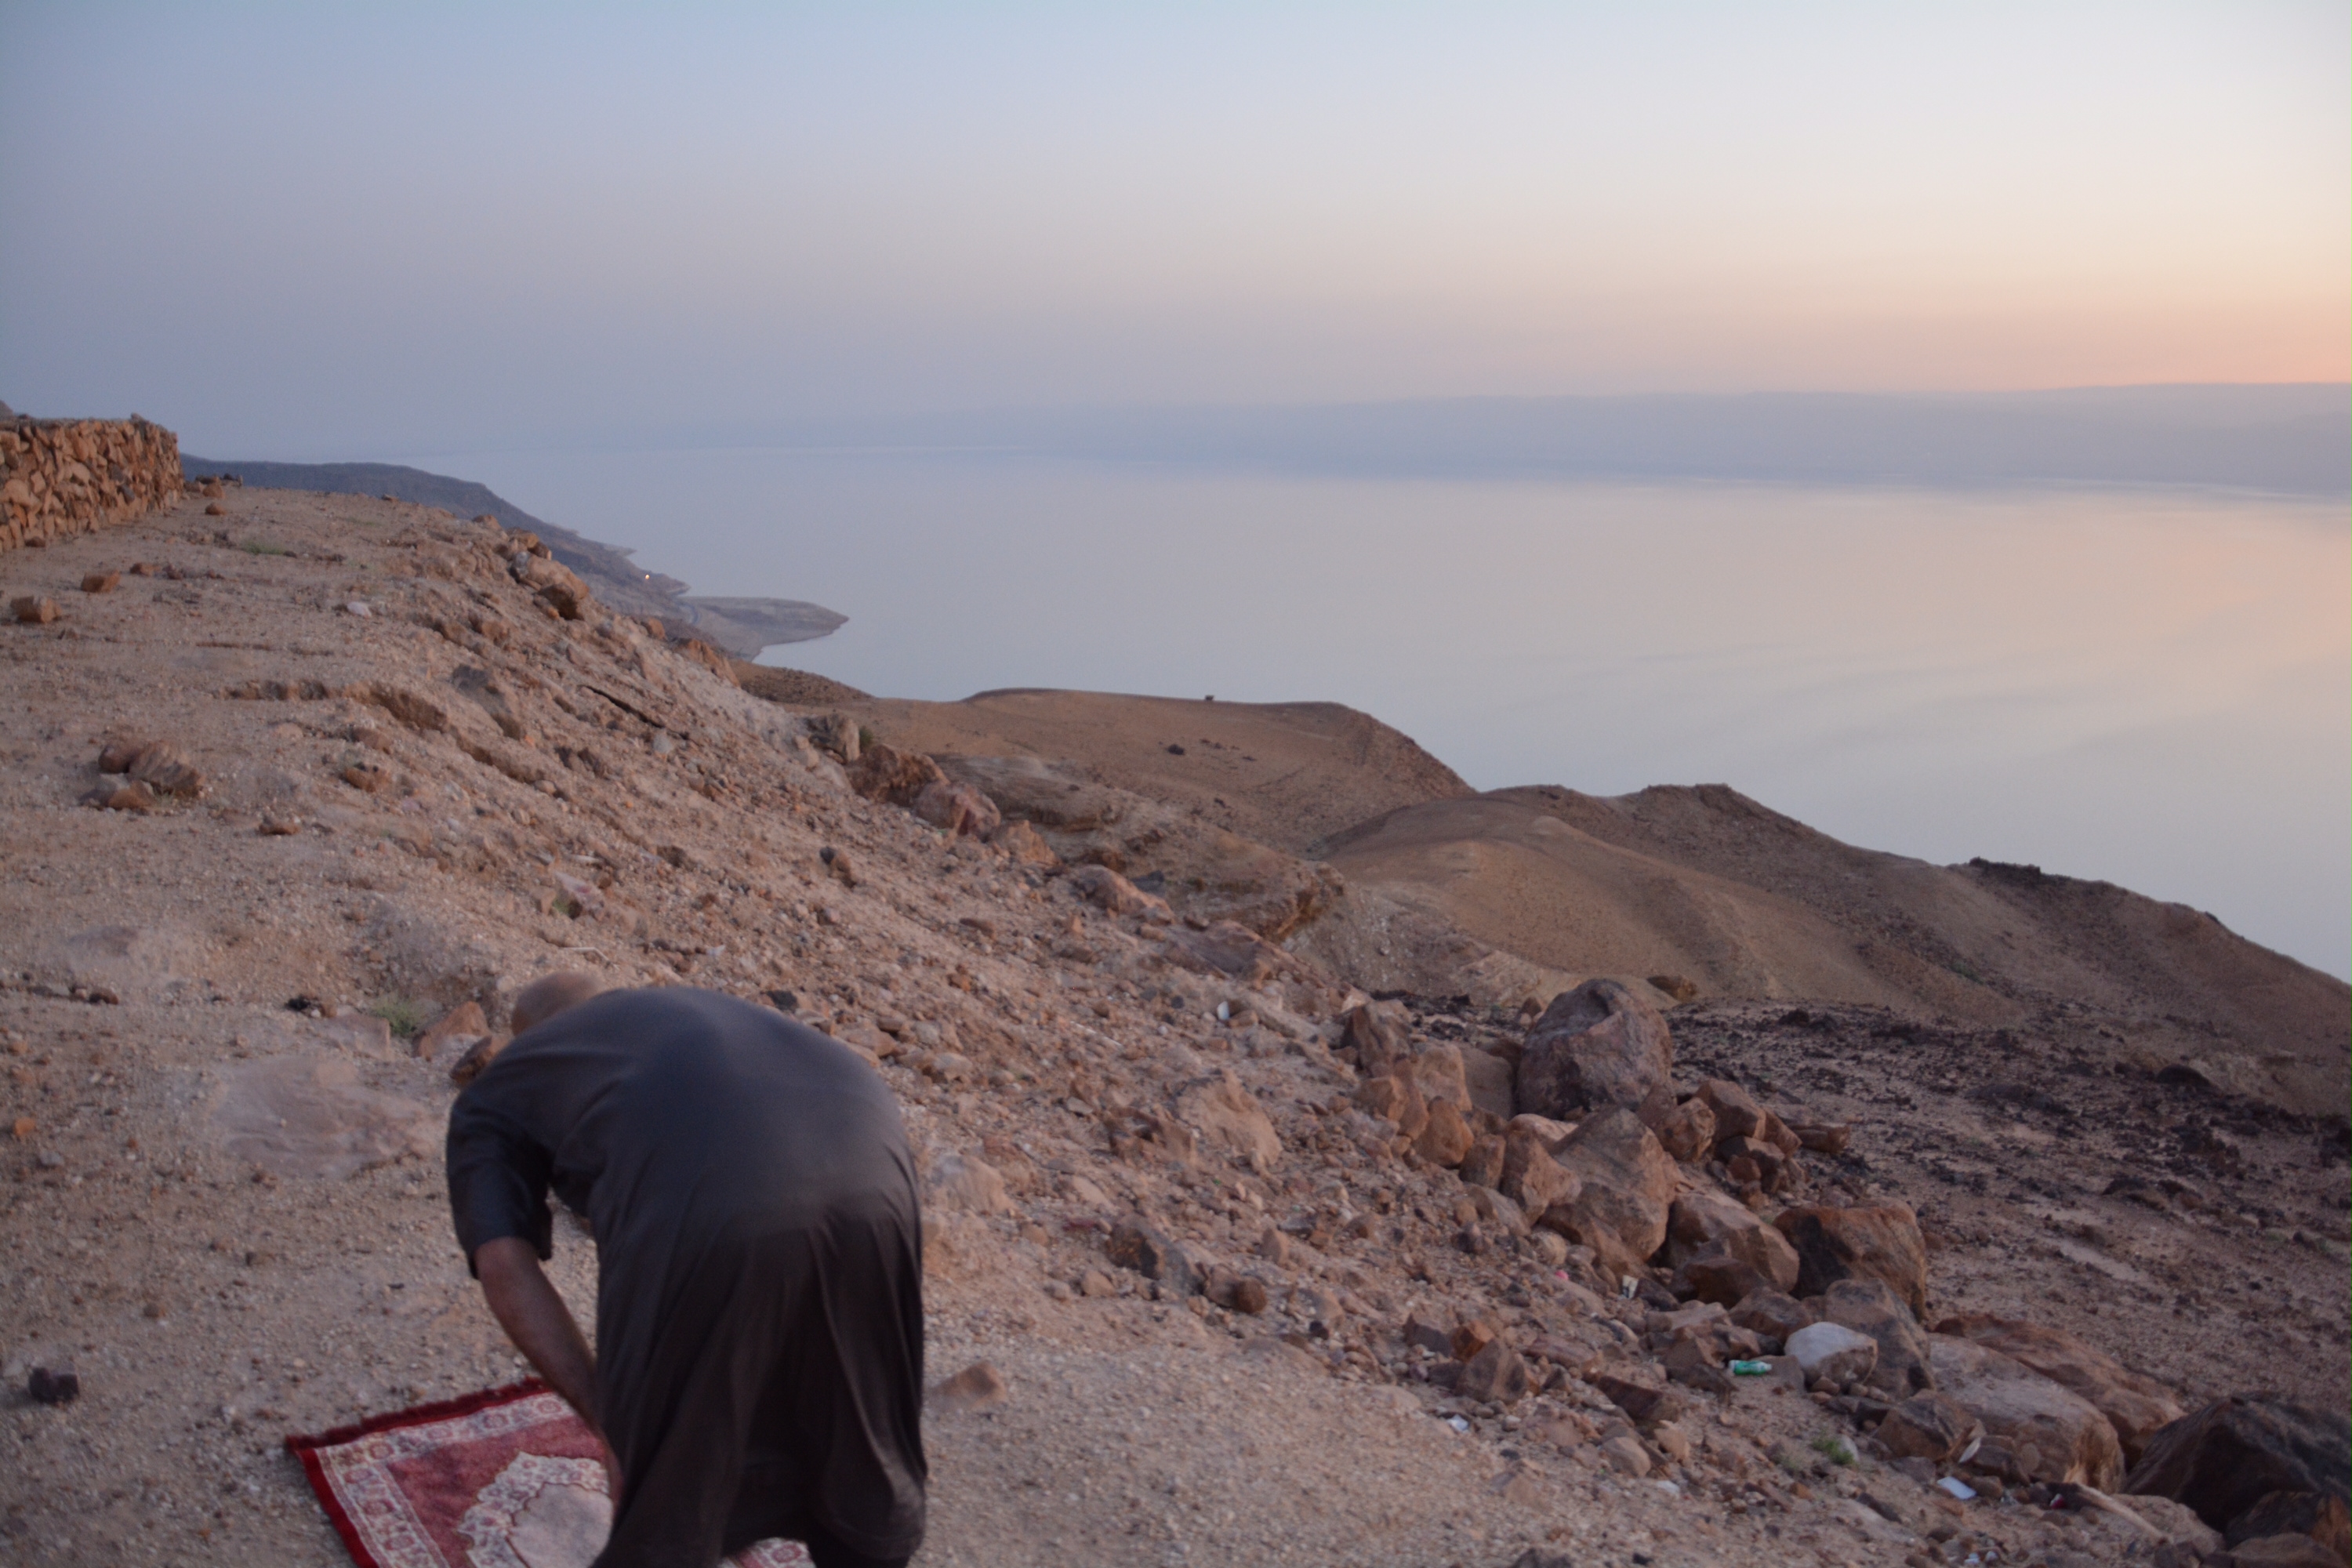 Jordanie, face à la mer morte et la Palestine en arrière plan